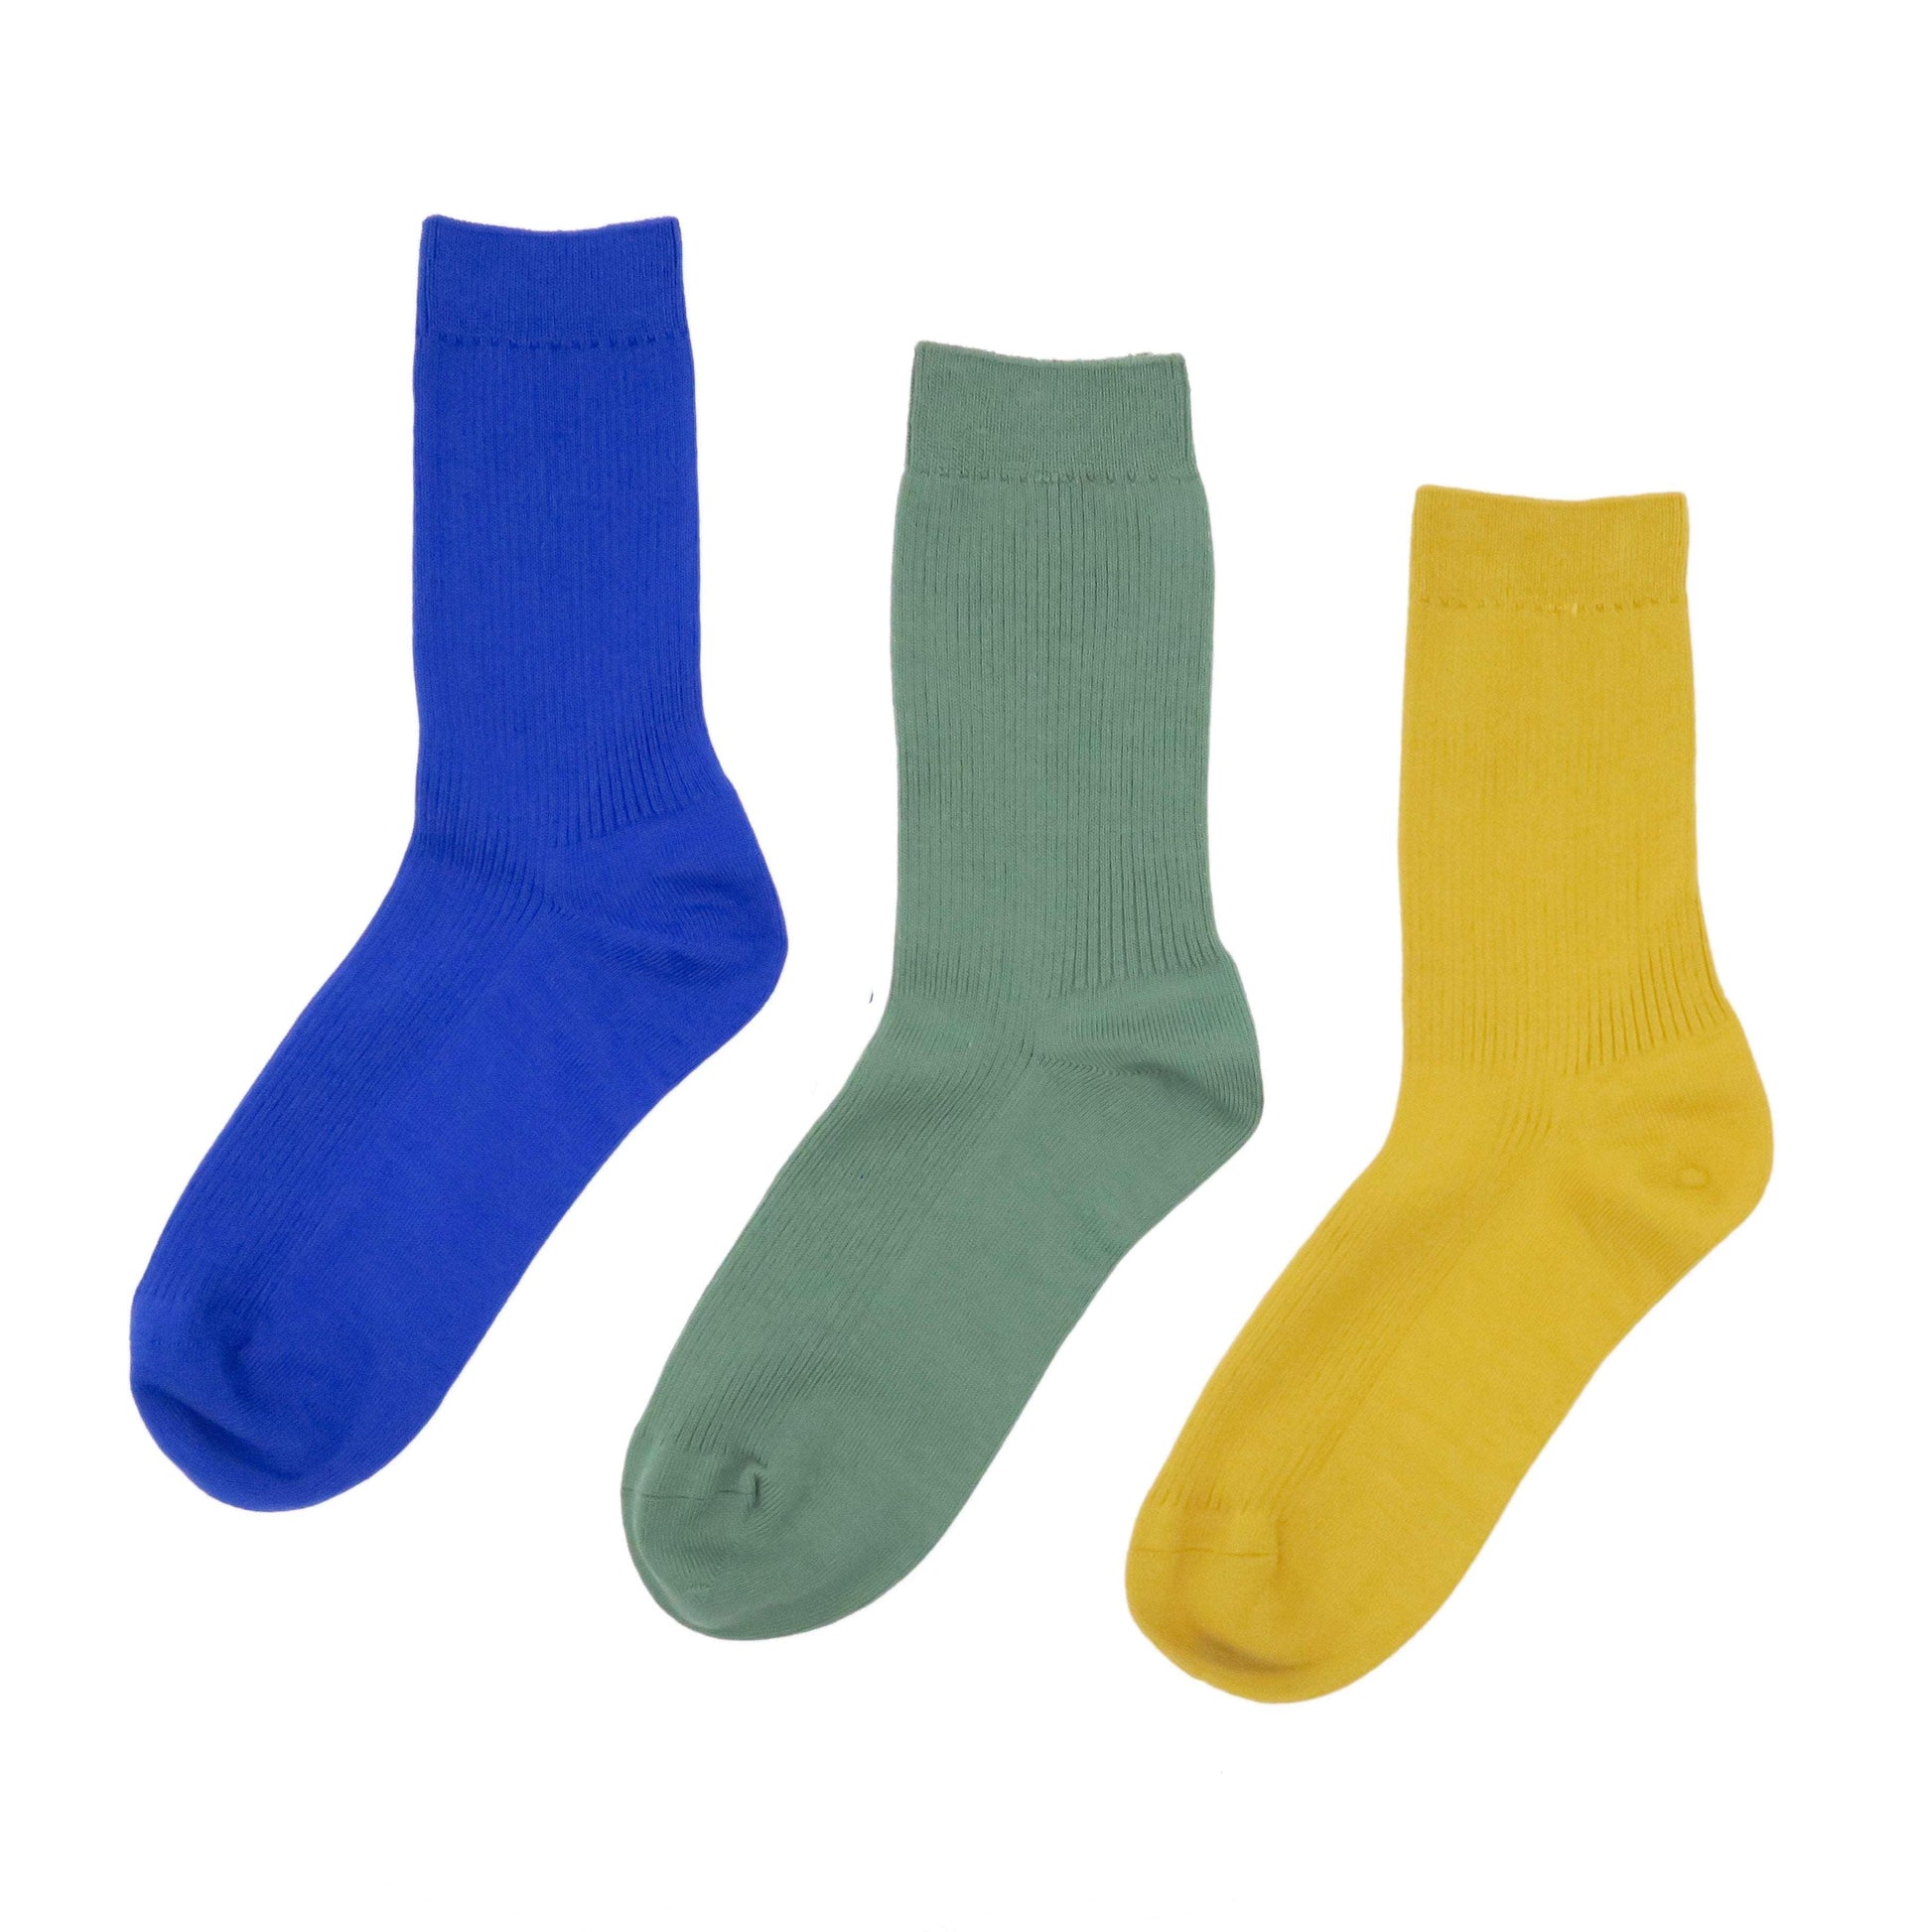 faye socks combo - basic comfy crew socks in 3 colors